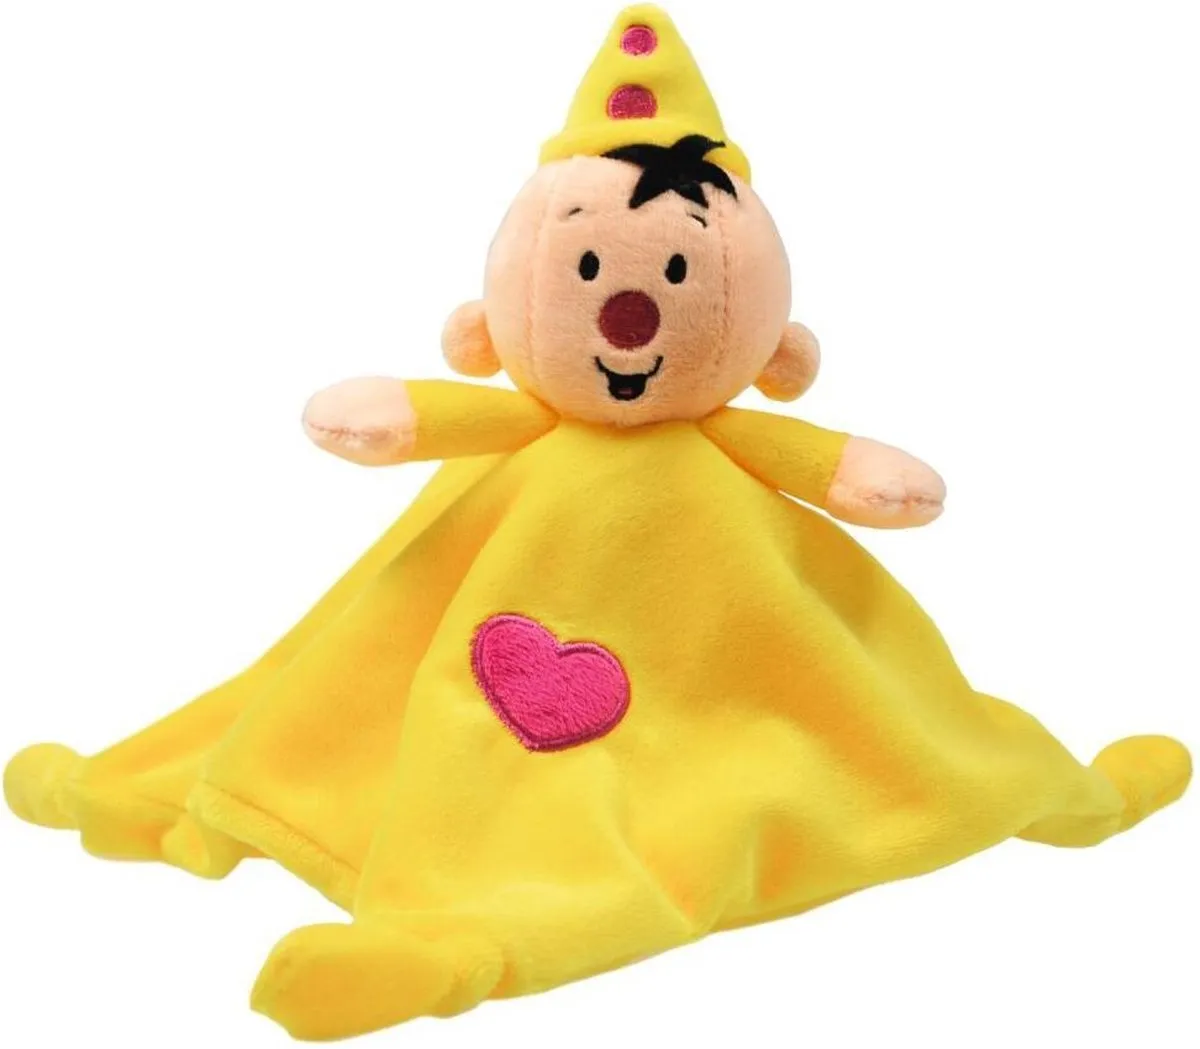 Bumba knuffeldoek - geel speelgoed